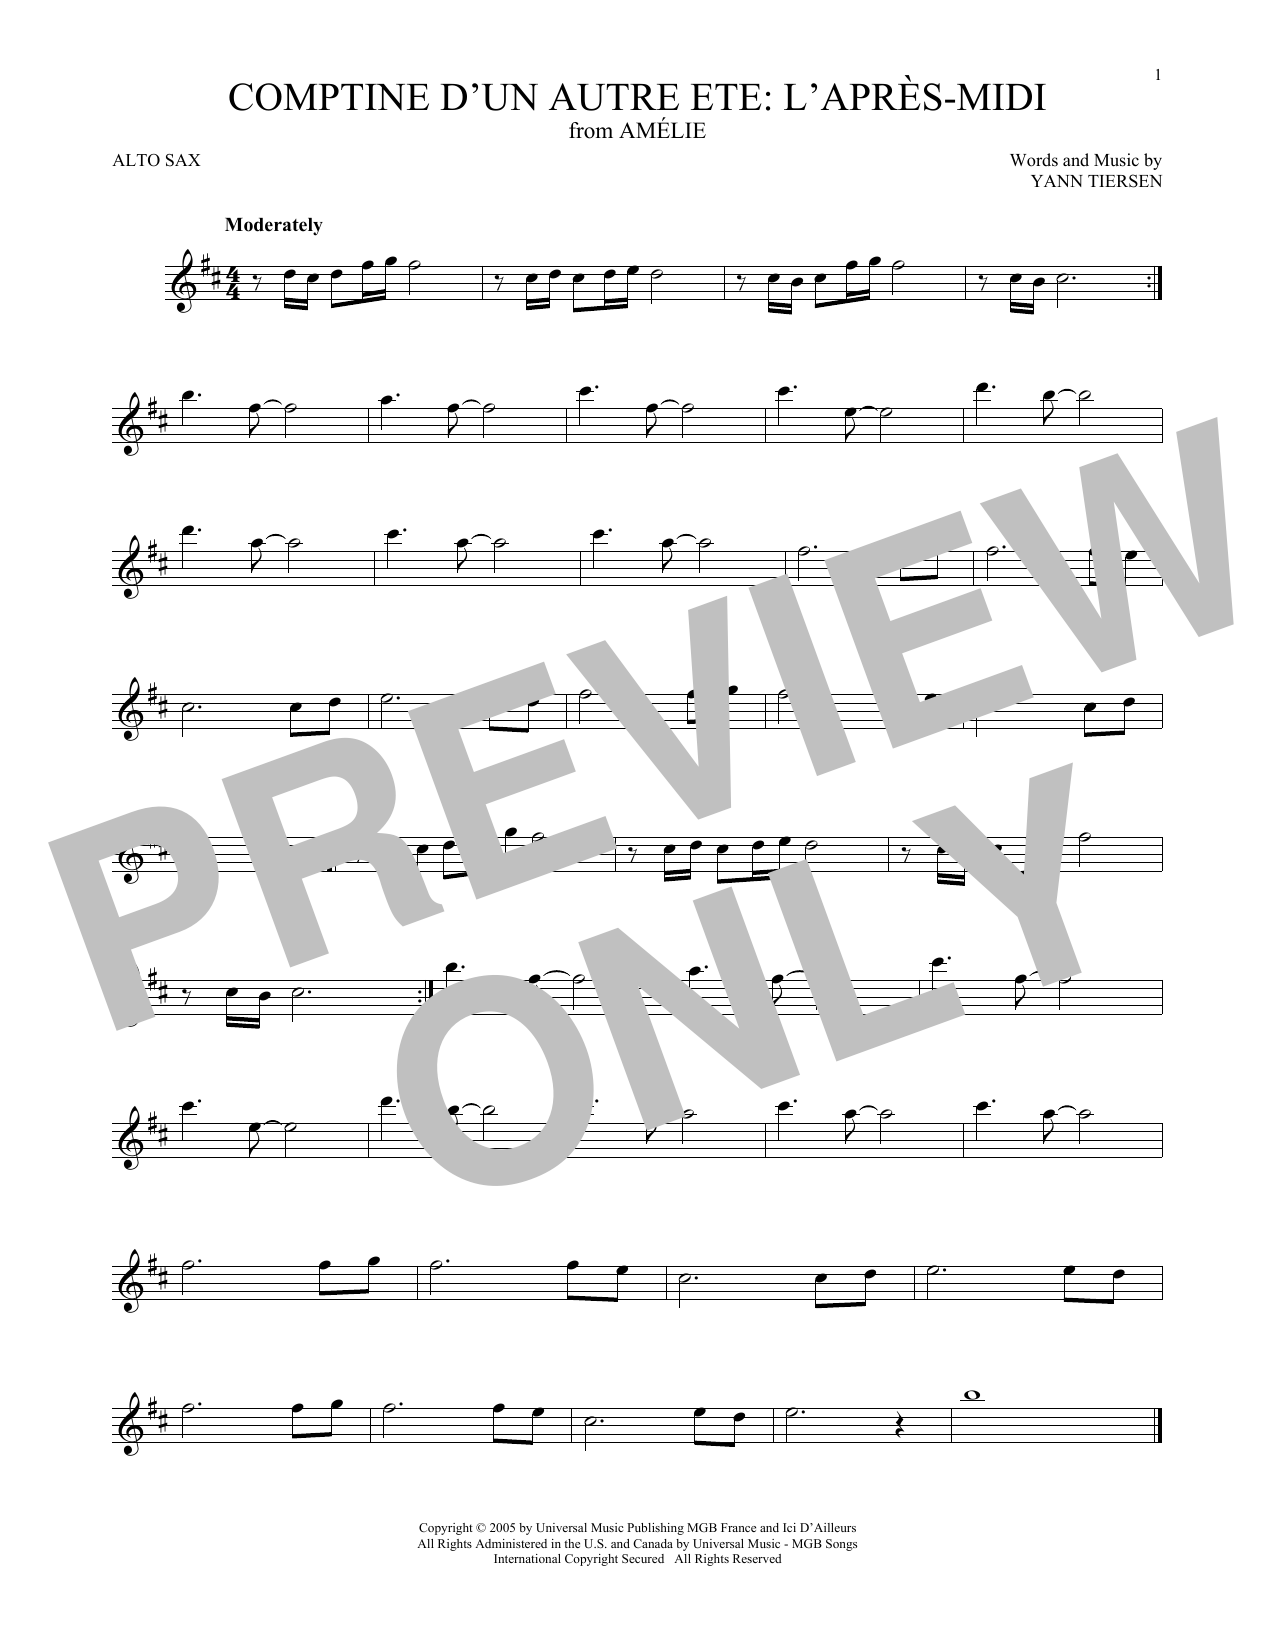 Yann Tiersen Comptine d'un autre été: L'après-midi (from Amelie) sheet music notes and chords arranged for Flute Solo